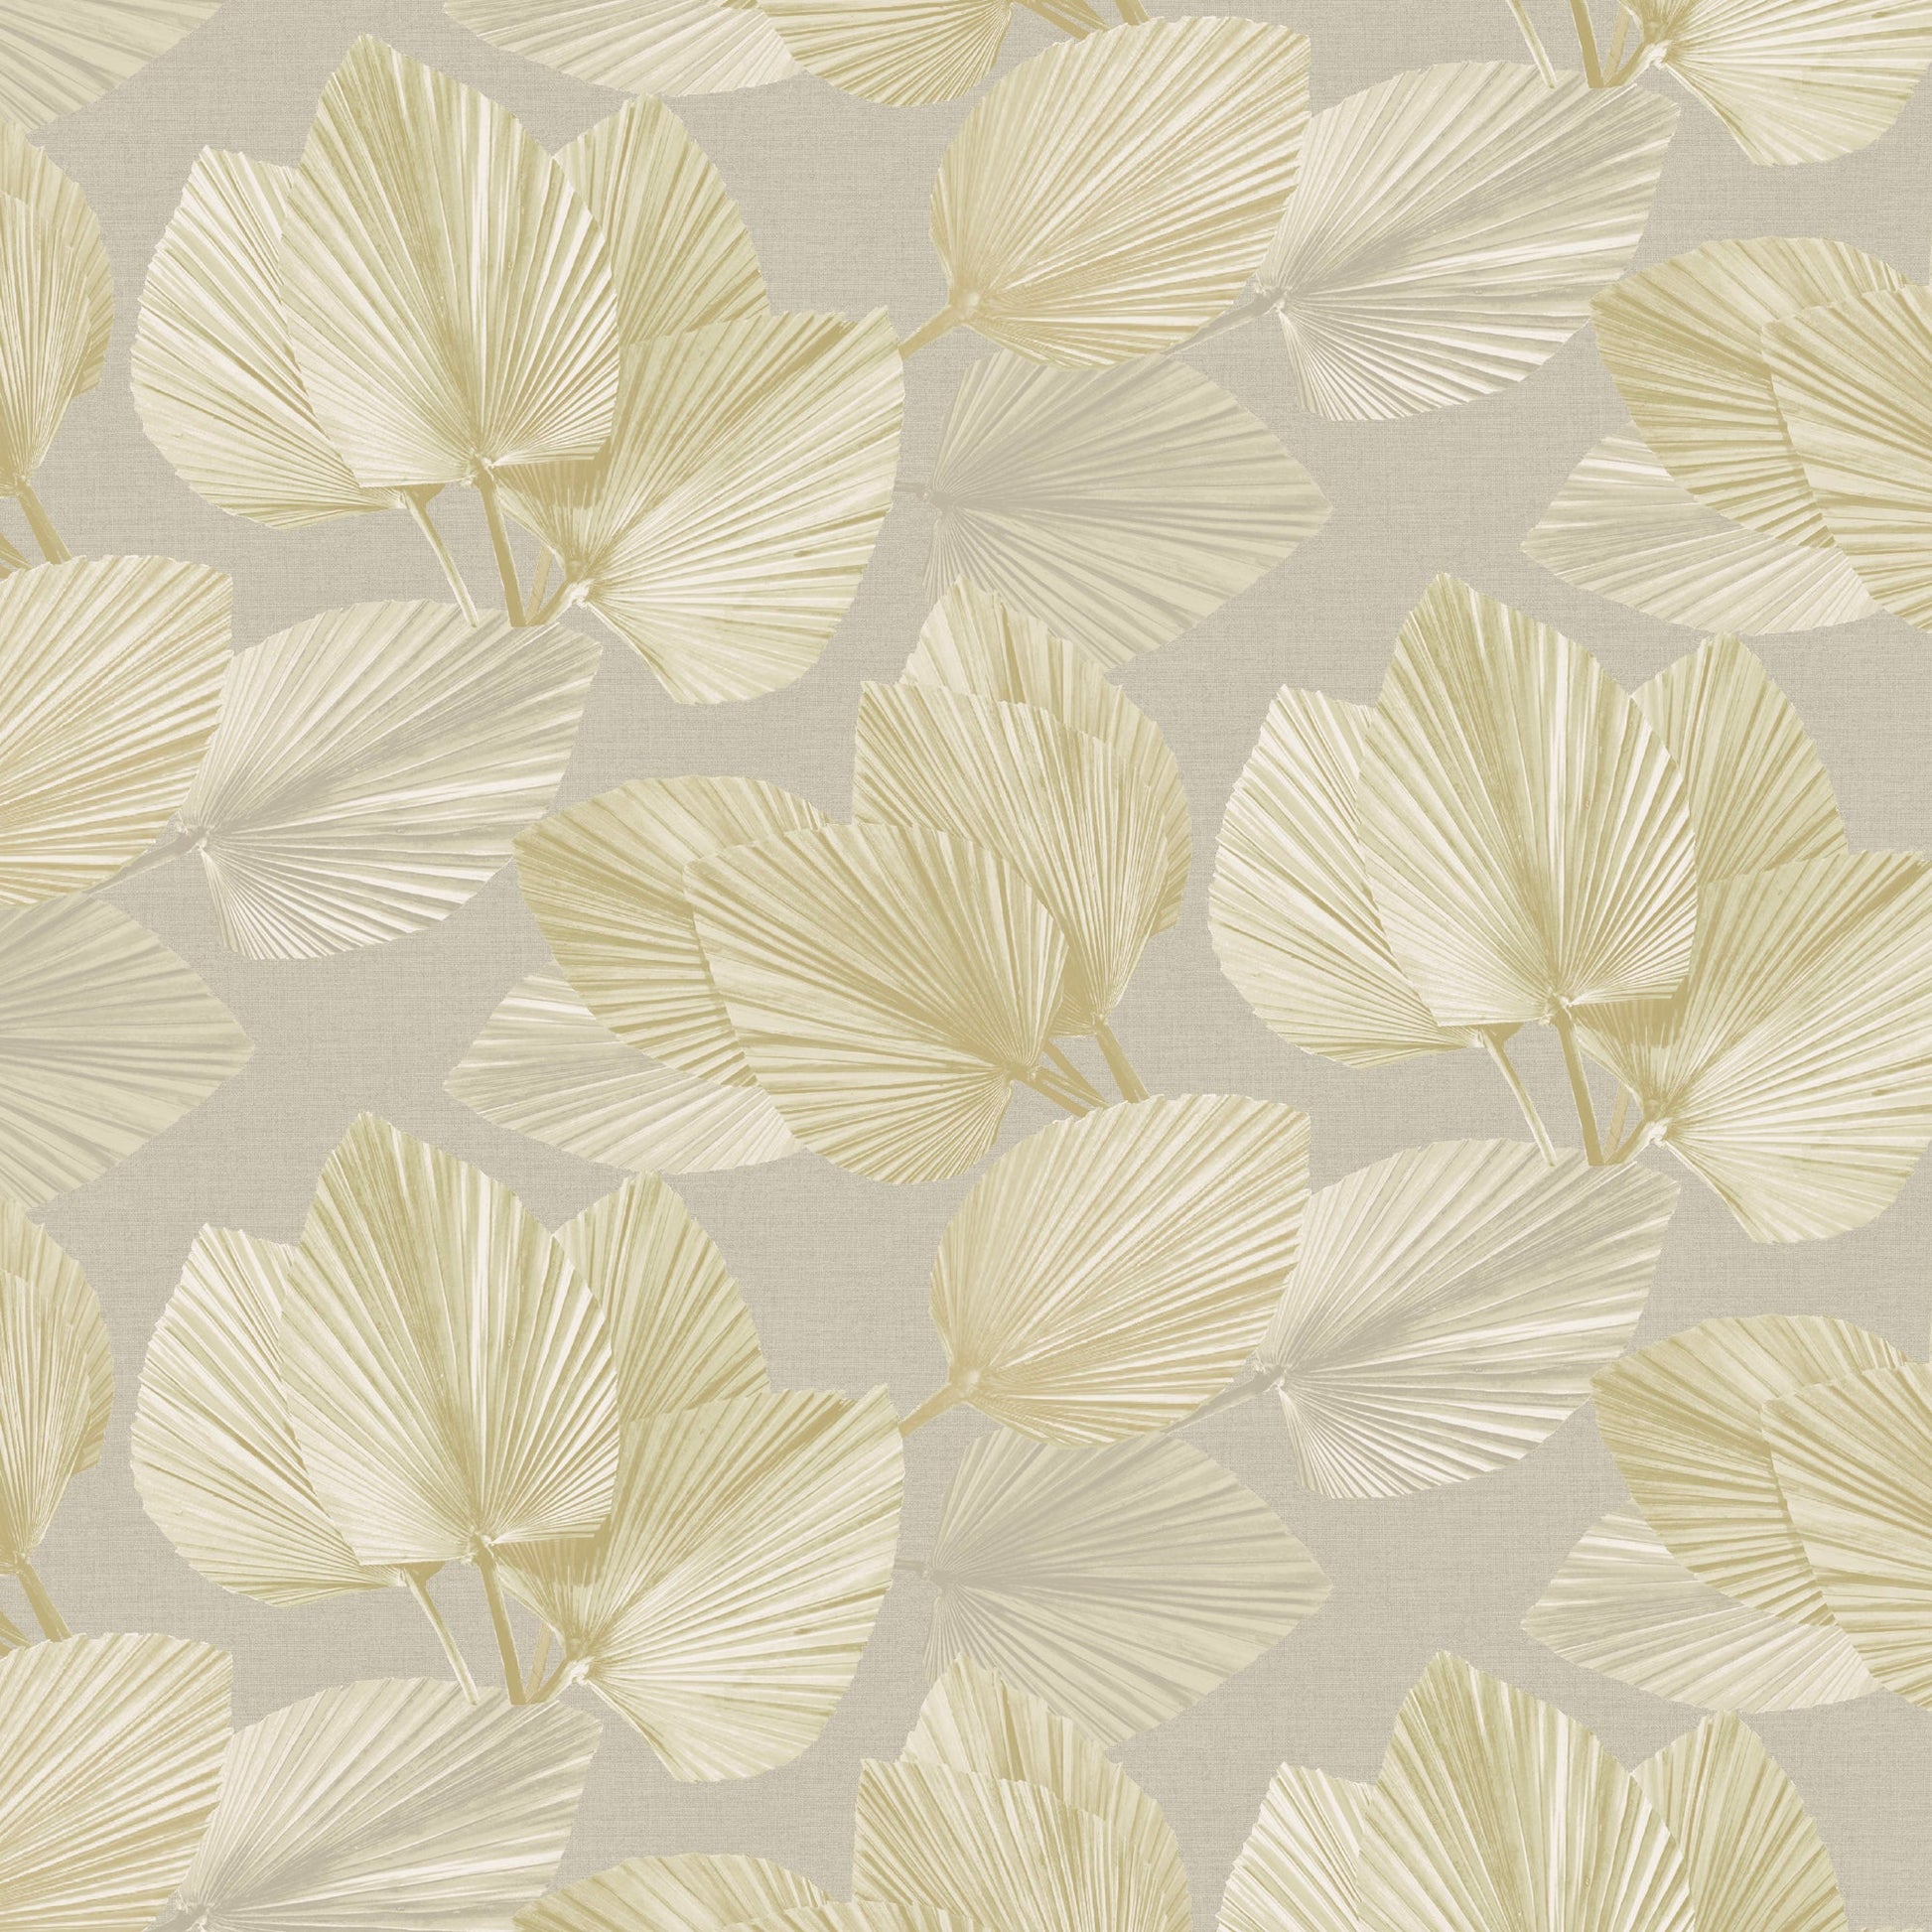 Purchase JF Wallpaper Pattern# 8235 16W9441 Beige Leaf Wallpaper